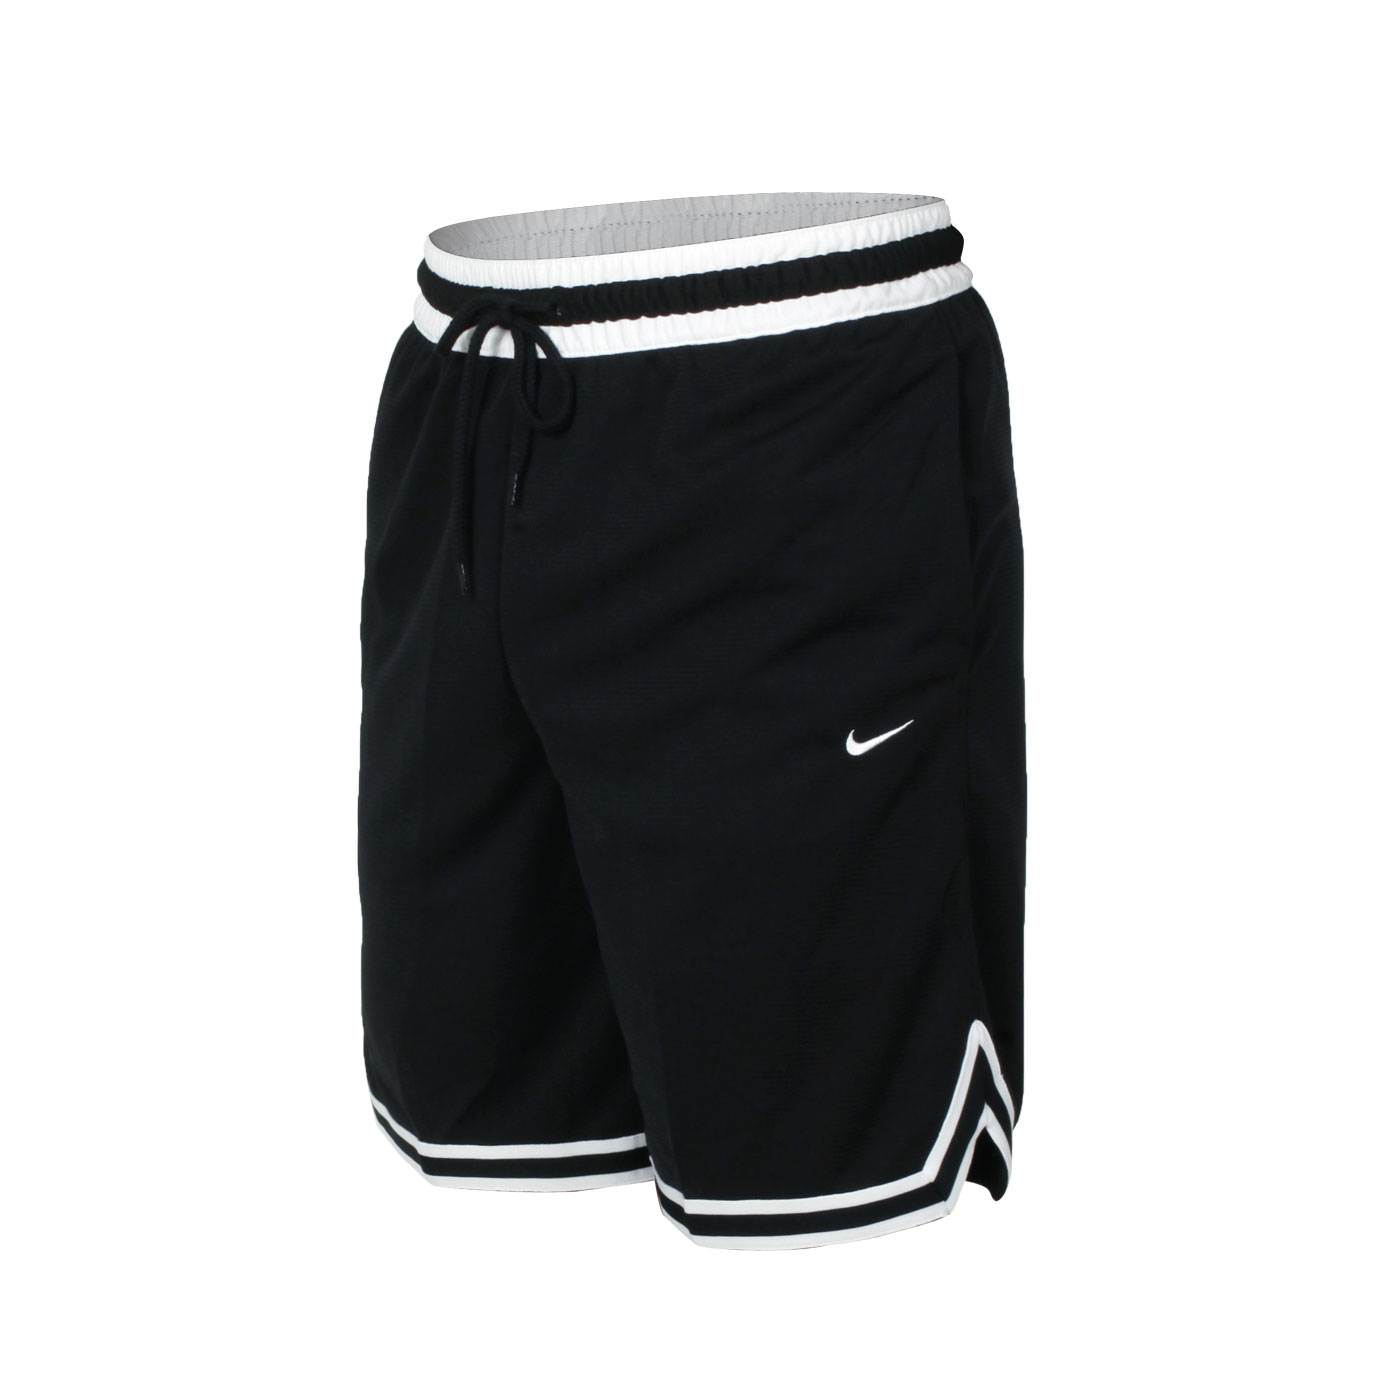 NIKE 男款籃球短褲 DH7161-010 - 黑白